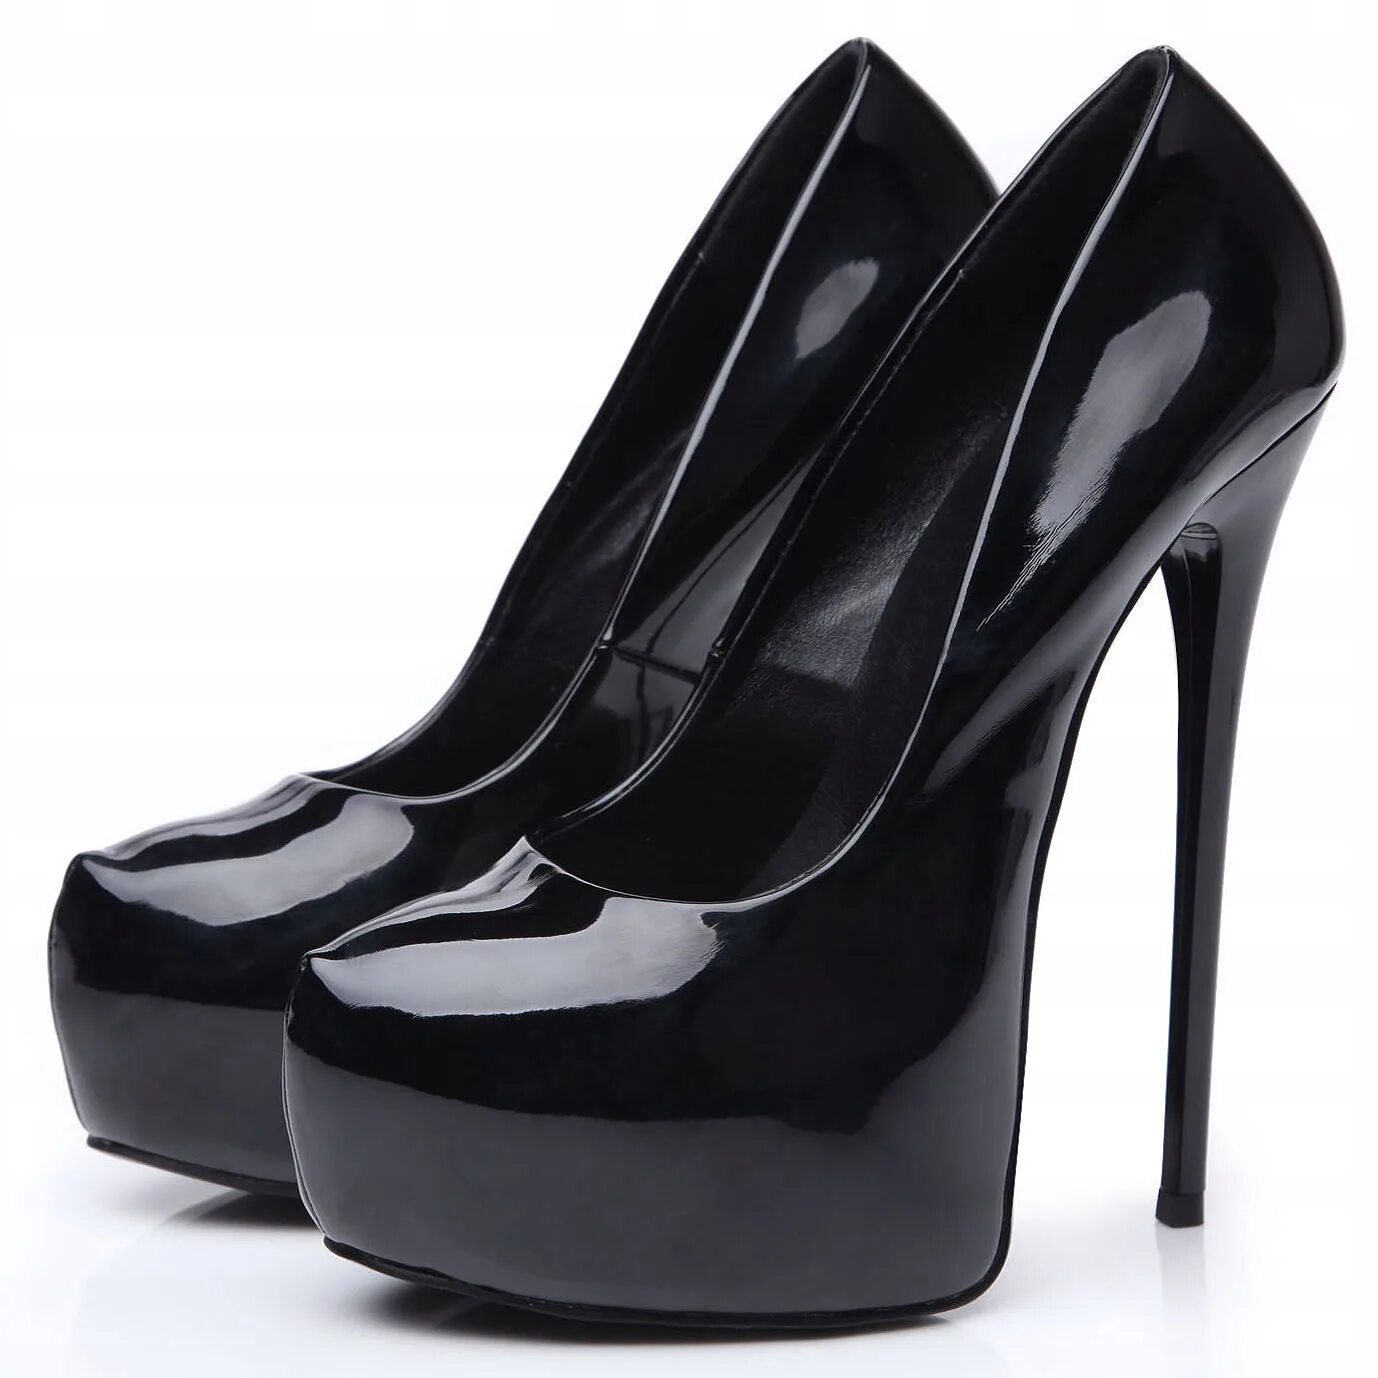 Black high heels. Туфли черные. Чёрные туфли на каблуке. Туфли женские на шпильке черные. Черные туфли на высоком каблуке.